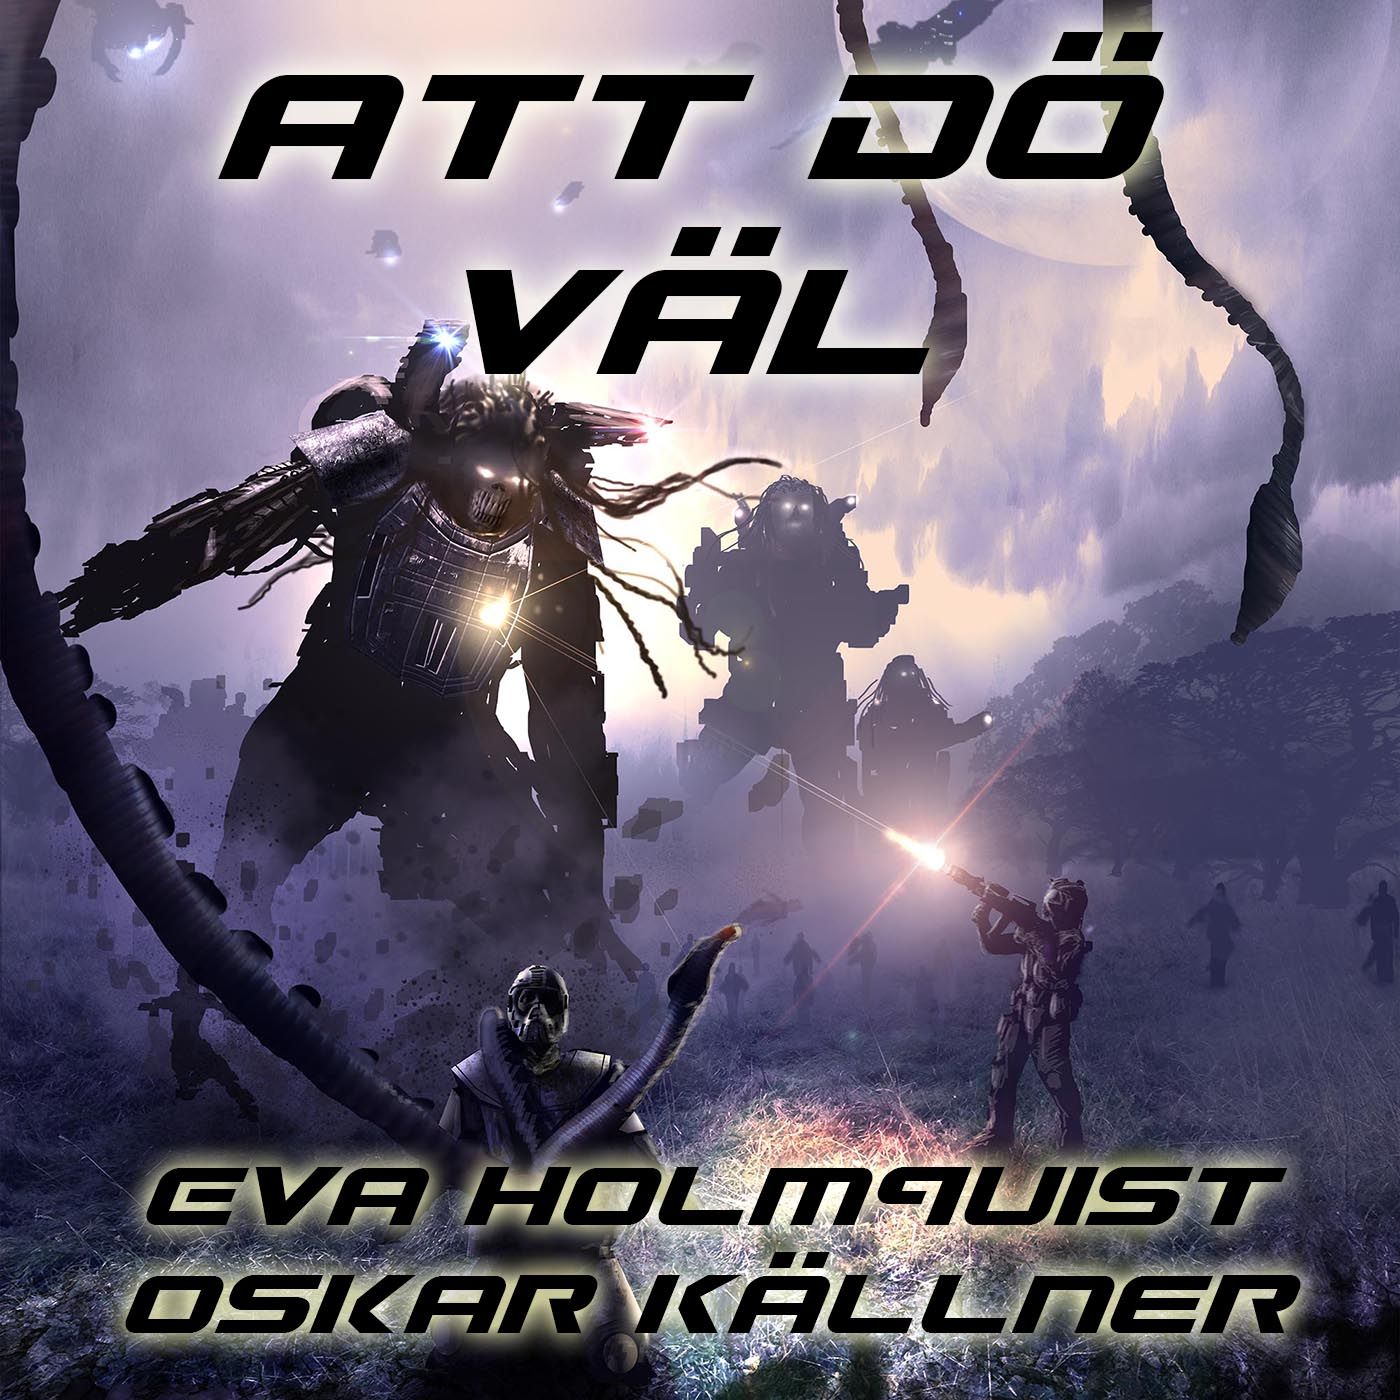 Att dö väl, ljudbok av Eva Holmquist, Oskar Källner